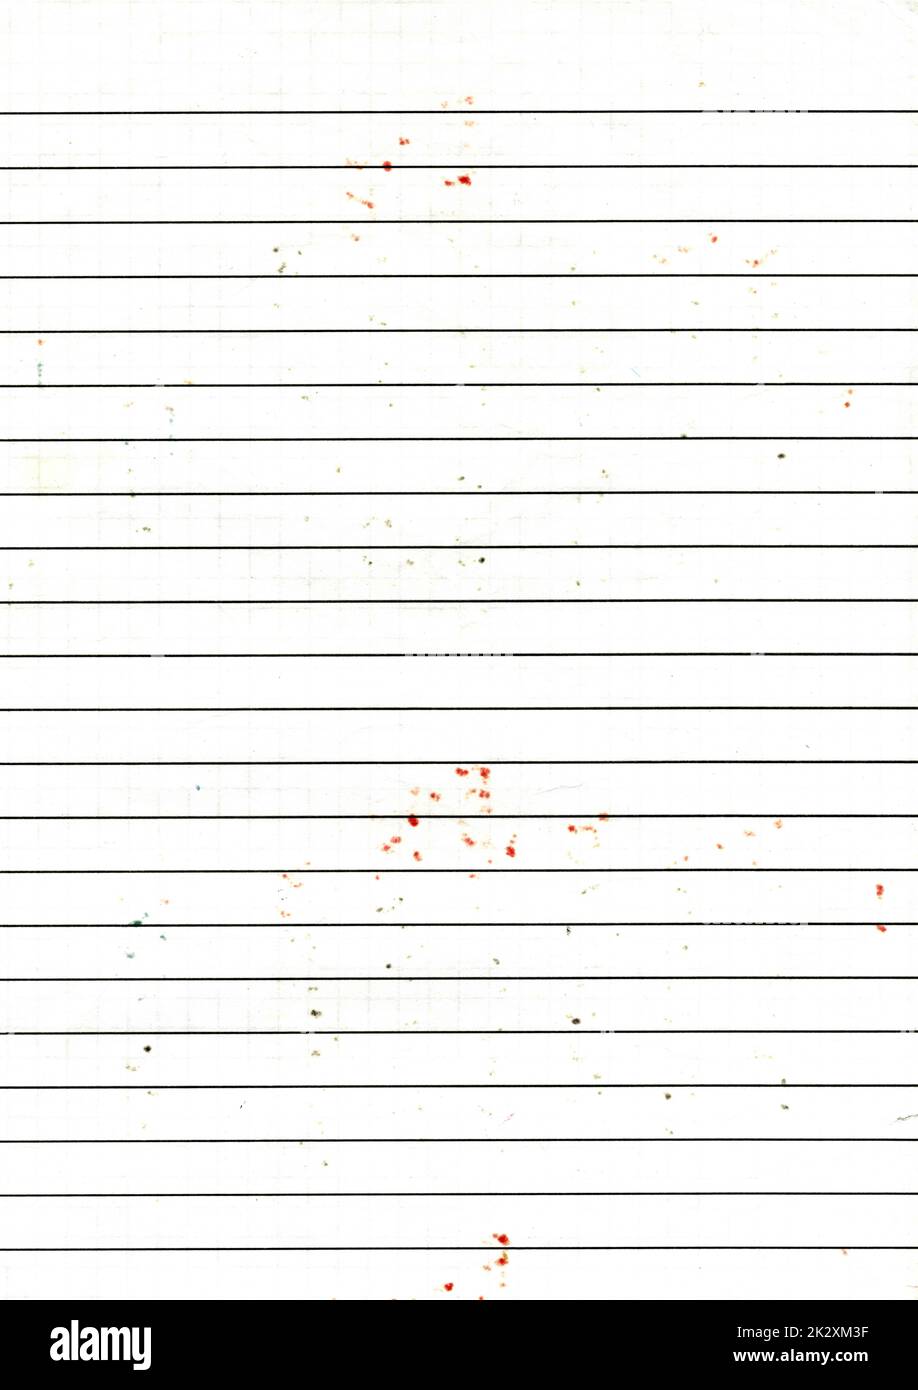 Hochauflösendes großes Bild von gebrauchtem, abgenutztem Liniendiagramm Papier Texturhintergrund mit Farbflecken beim Schreiben mit Markern, verwitterte Altpapier-Tapete mit Kopierbereich für Text Stockfoto